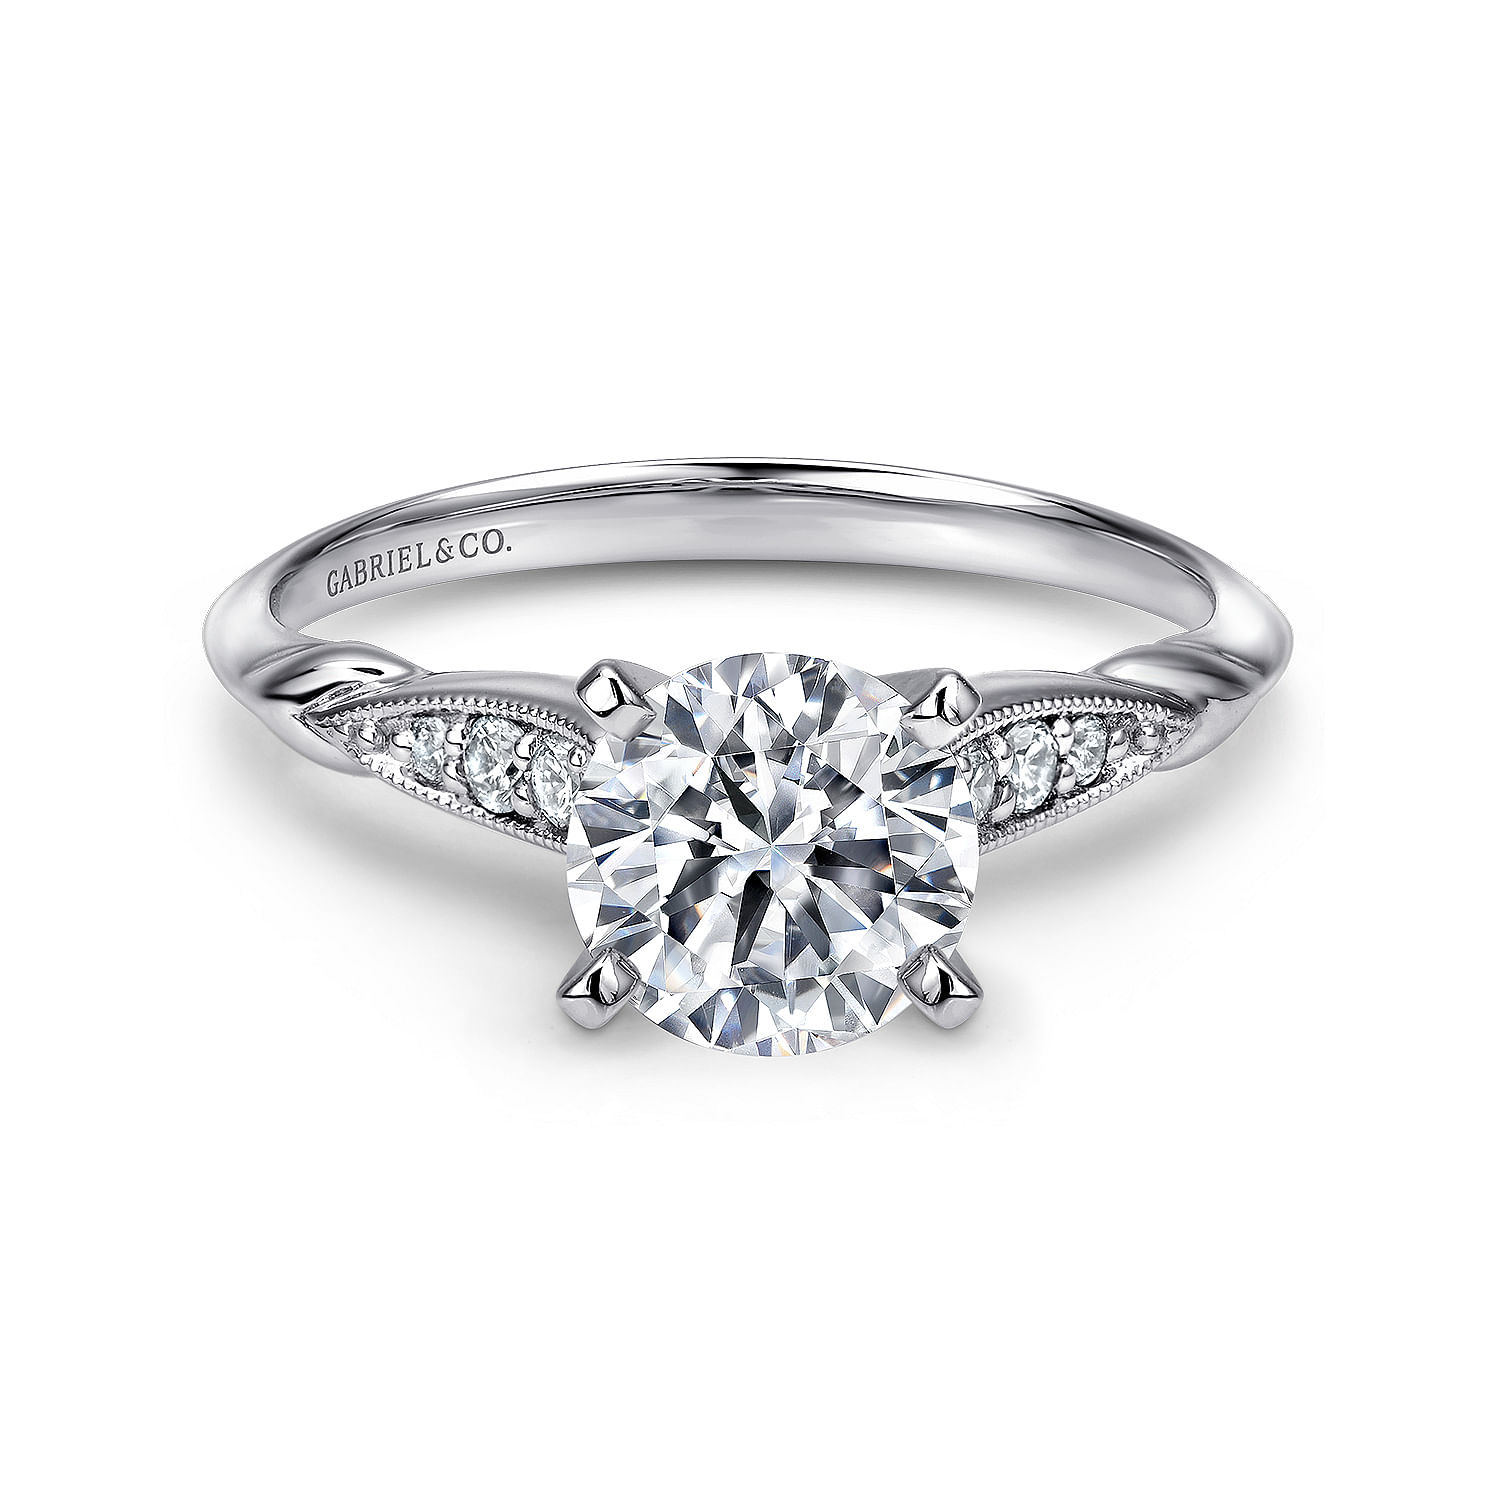 Nora---14K-White-Gold-Round-Diamond-Engagement-Ring1